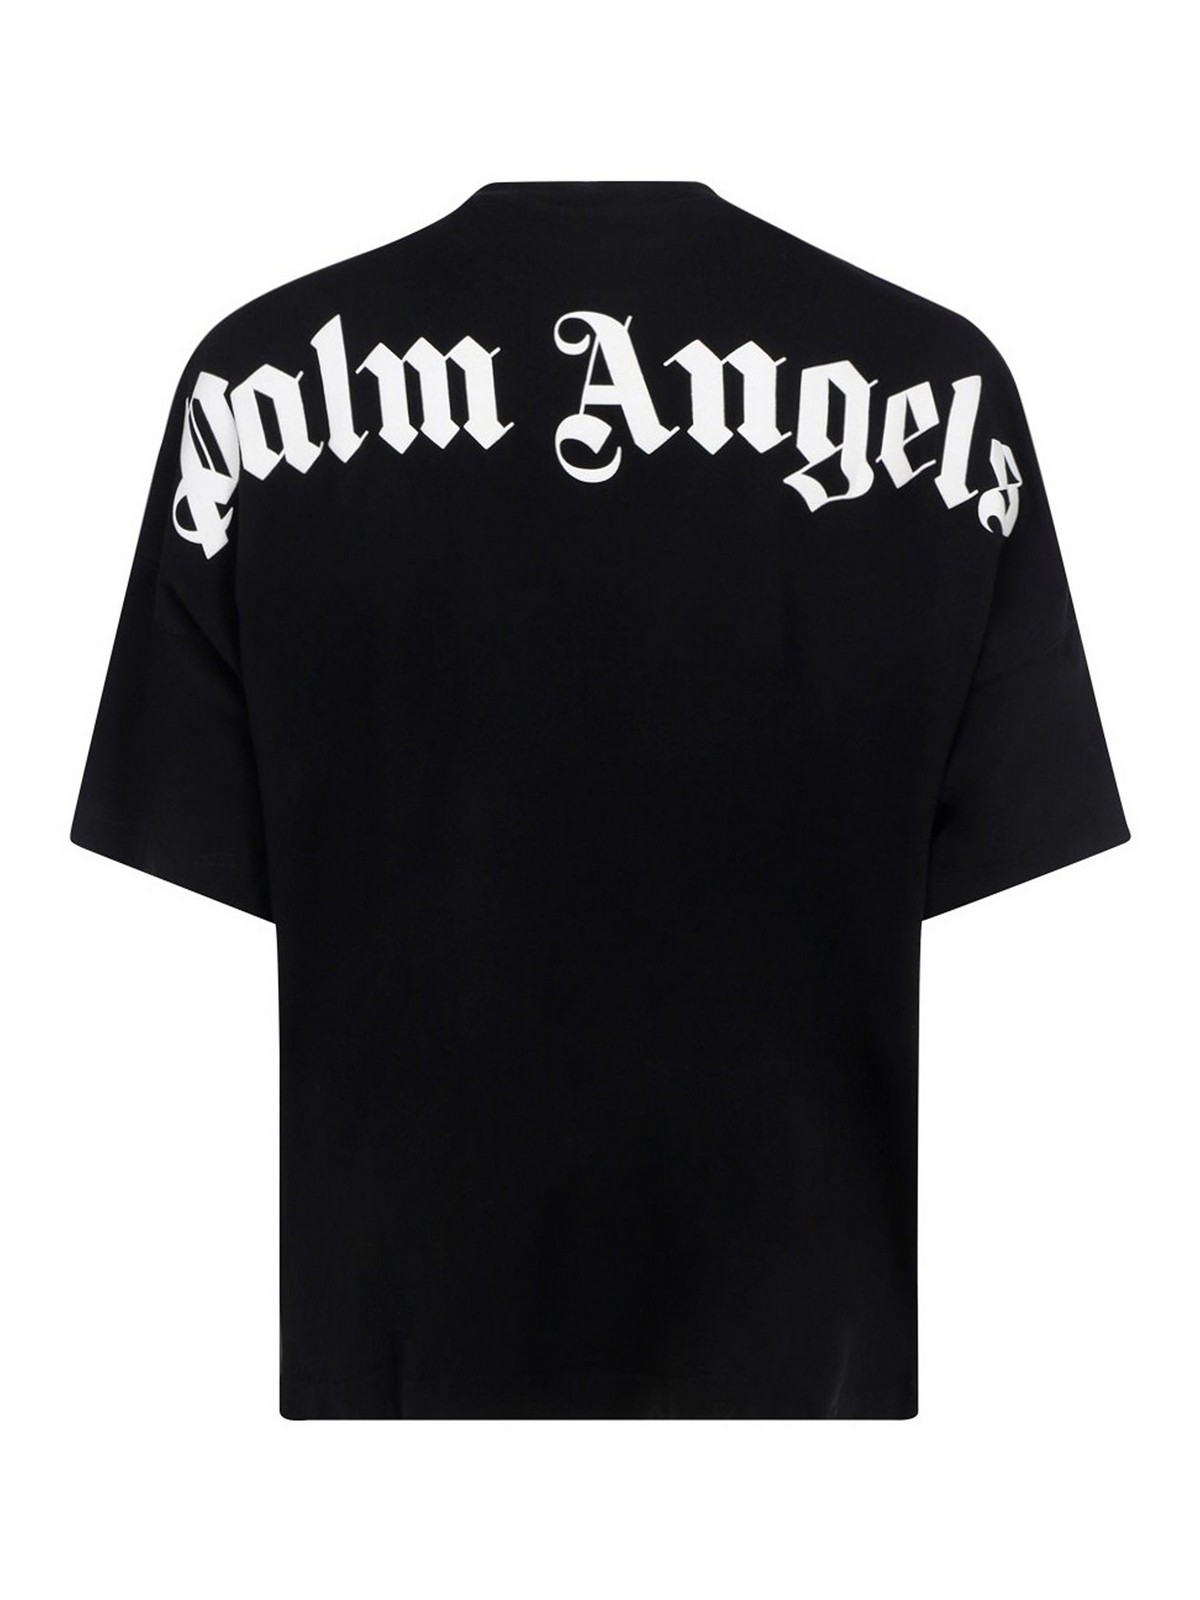 Palm Angels （パーム エンジェルス）  Tシャツ